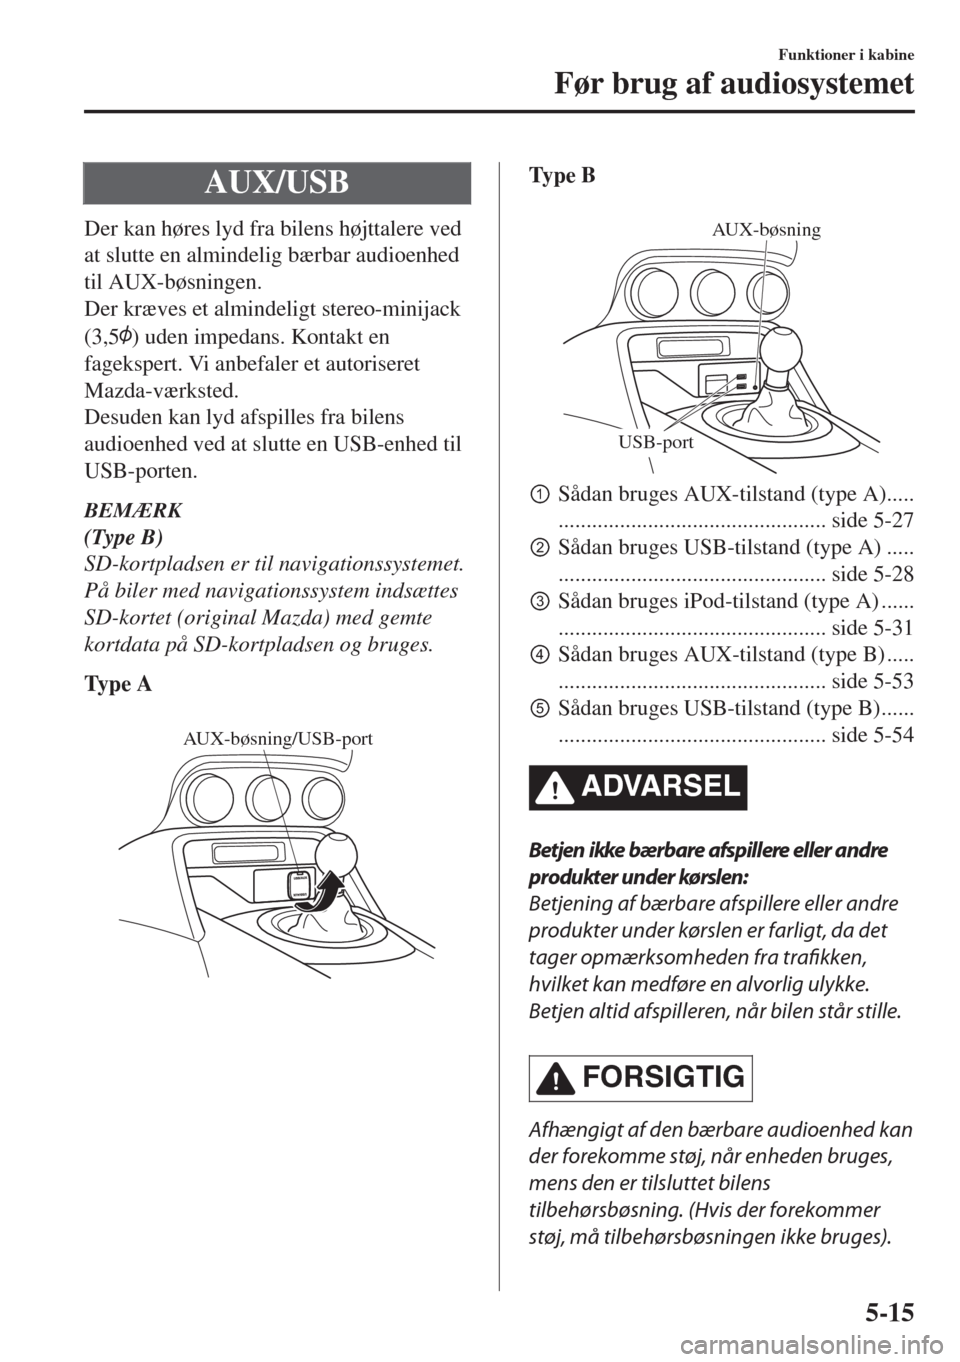 MAZDA MODEL MX-5 2018  Instruktionsbog (in Danish) AUX/USB
Der kan høres lyd fra bilens højttalere ved
at slutte en almindelig bærbar audioenhed
til AUX-bøsningen.
Der kræves et almindeligt stereo-minijack
(3,5
) uden impedans. Kontakt en
fageksp